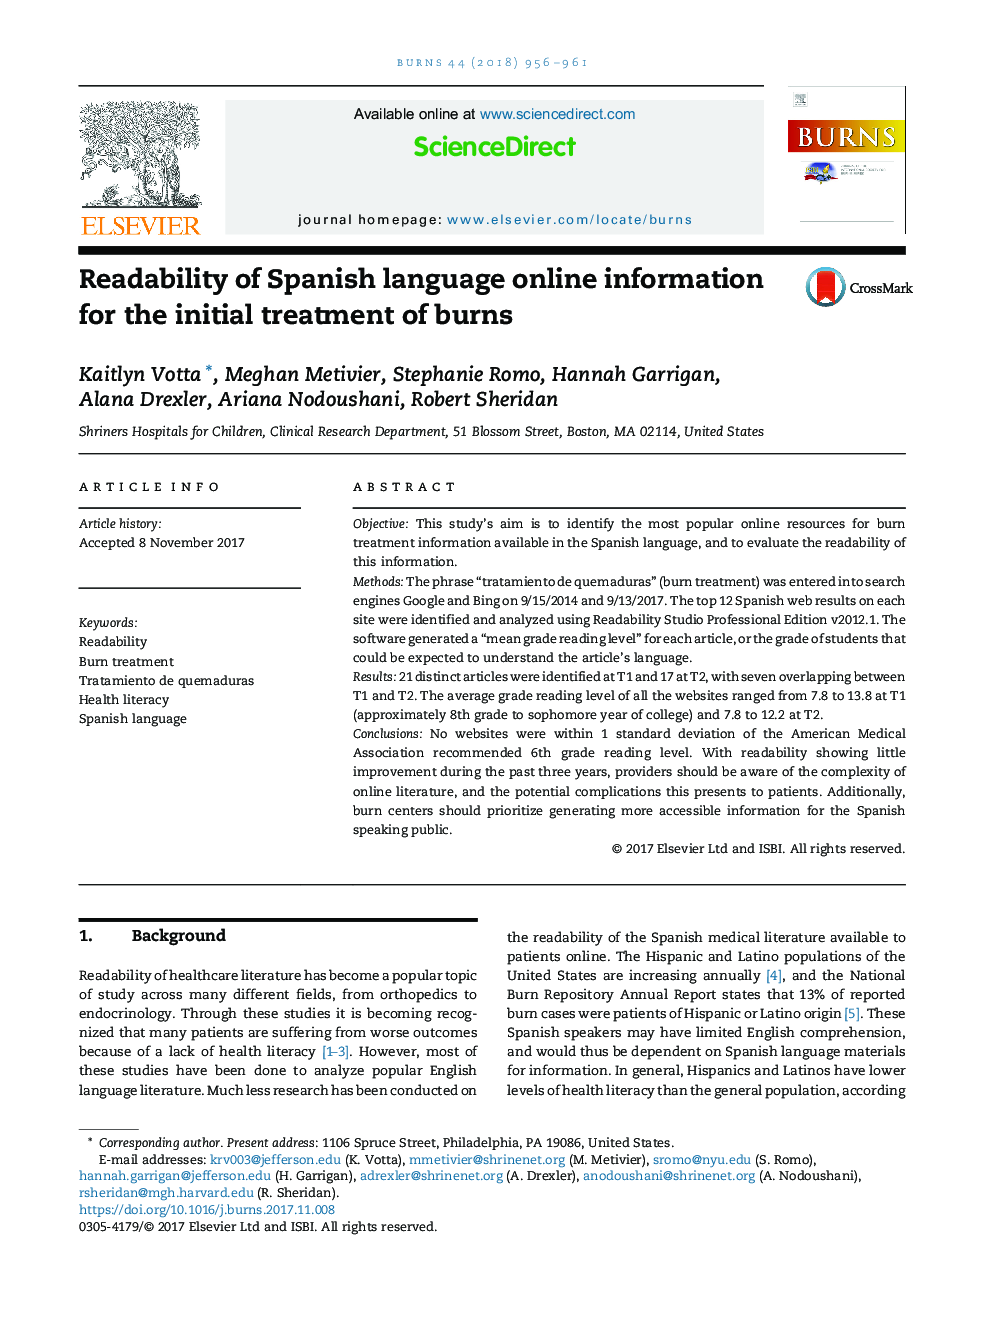 قابلیت خواندن اطلاعات آنلاین اسپانیایی برای درمان اولیه سوختگی 